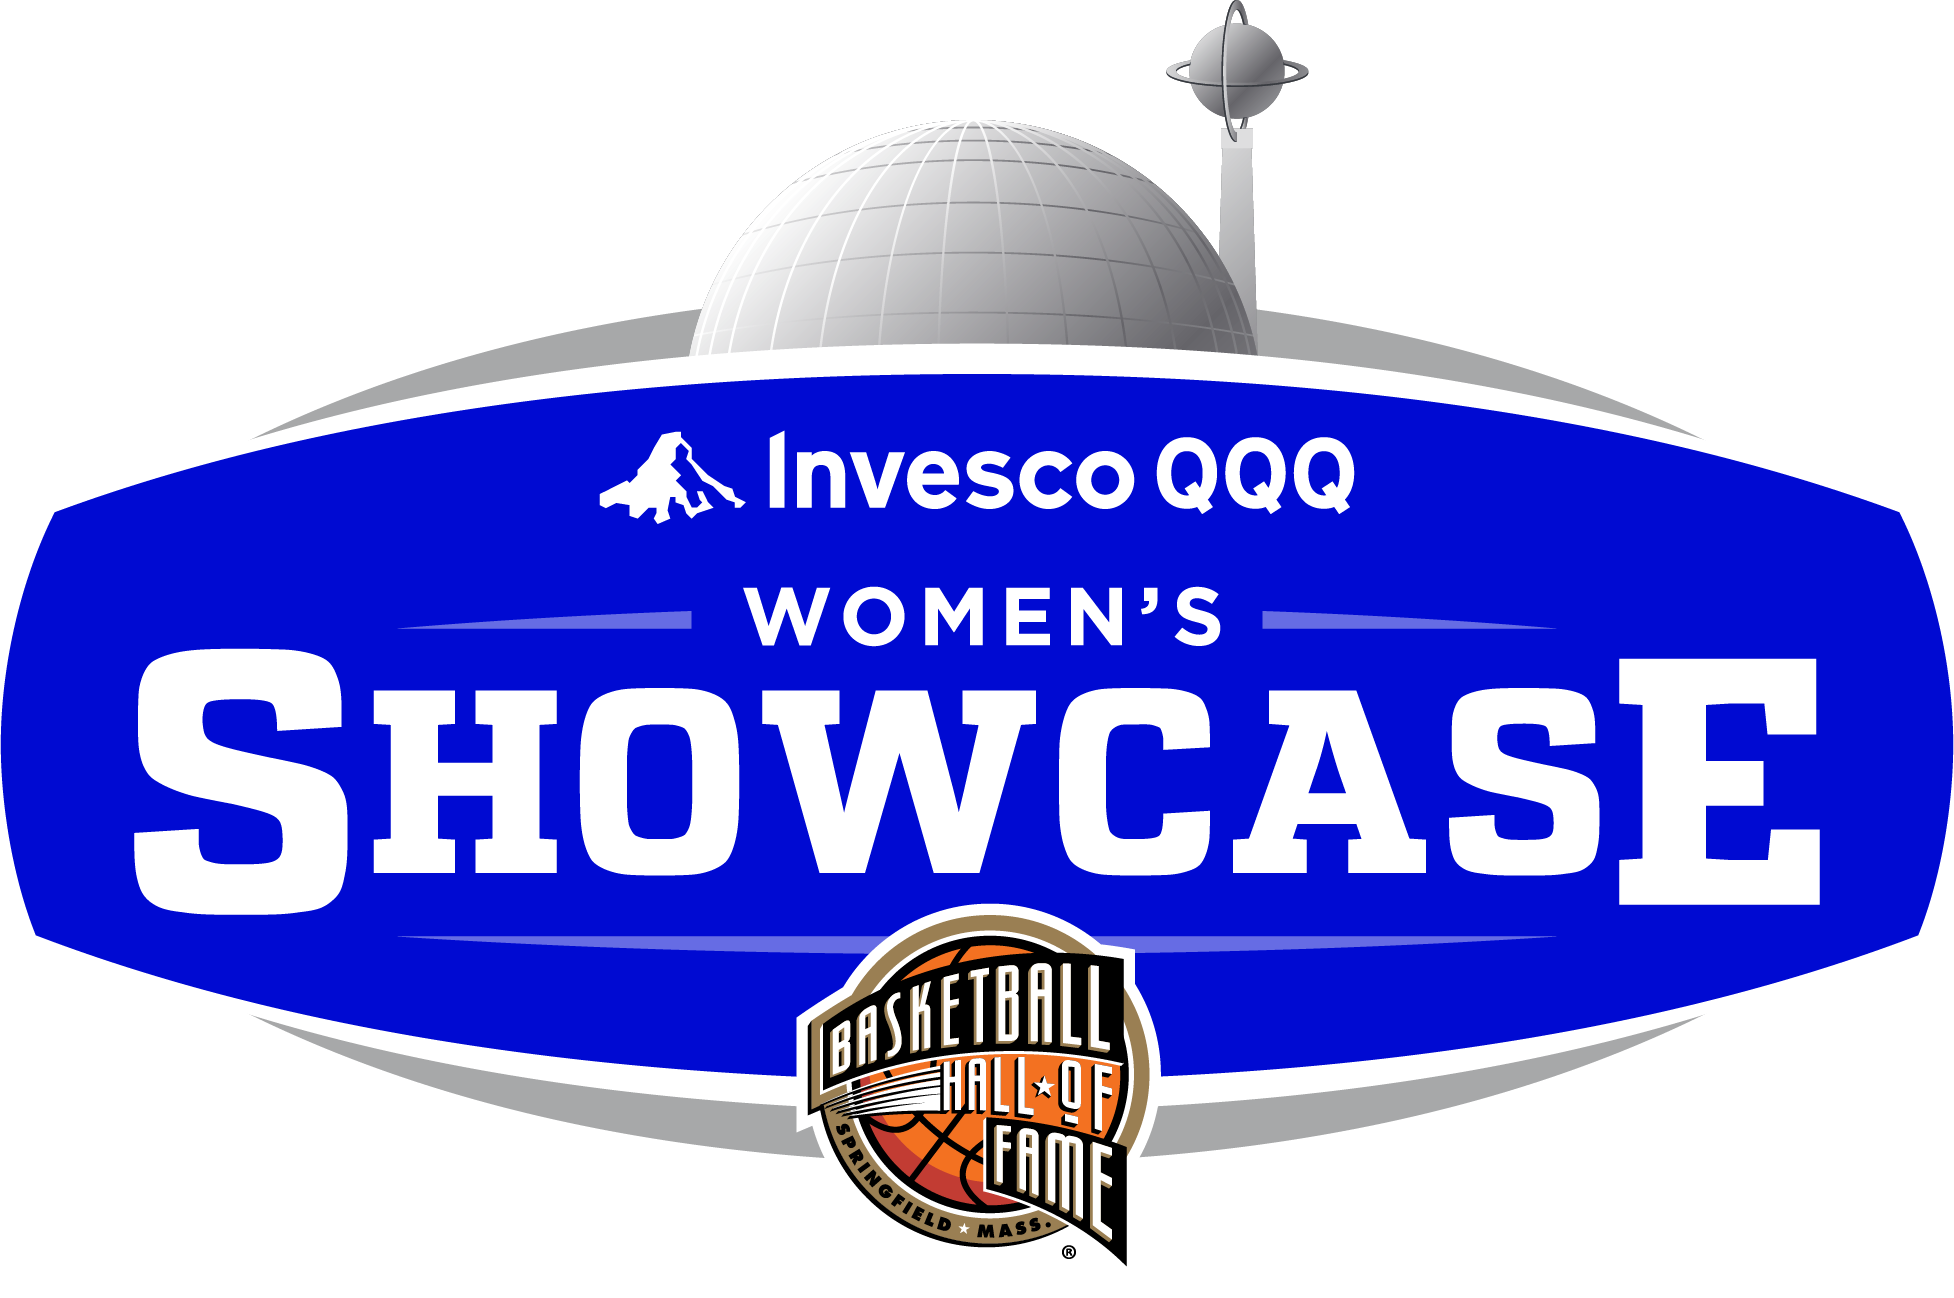 Women's Showcase Event Logo